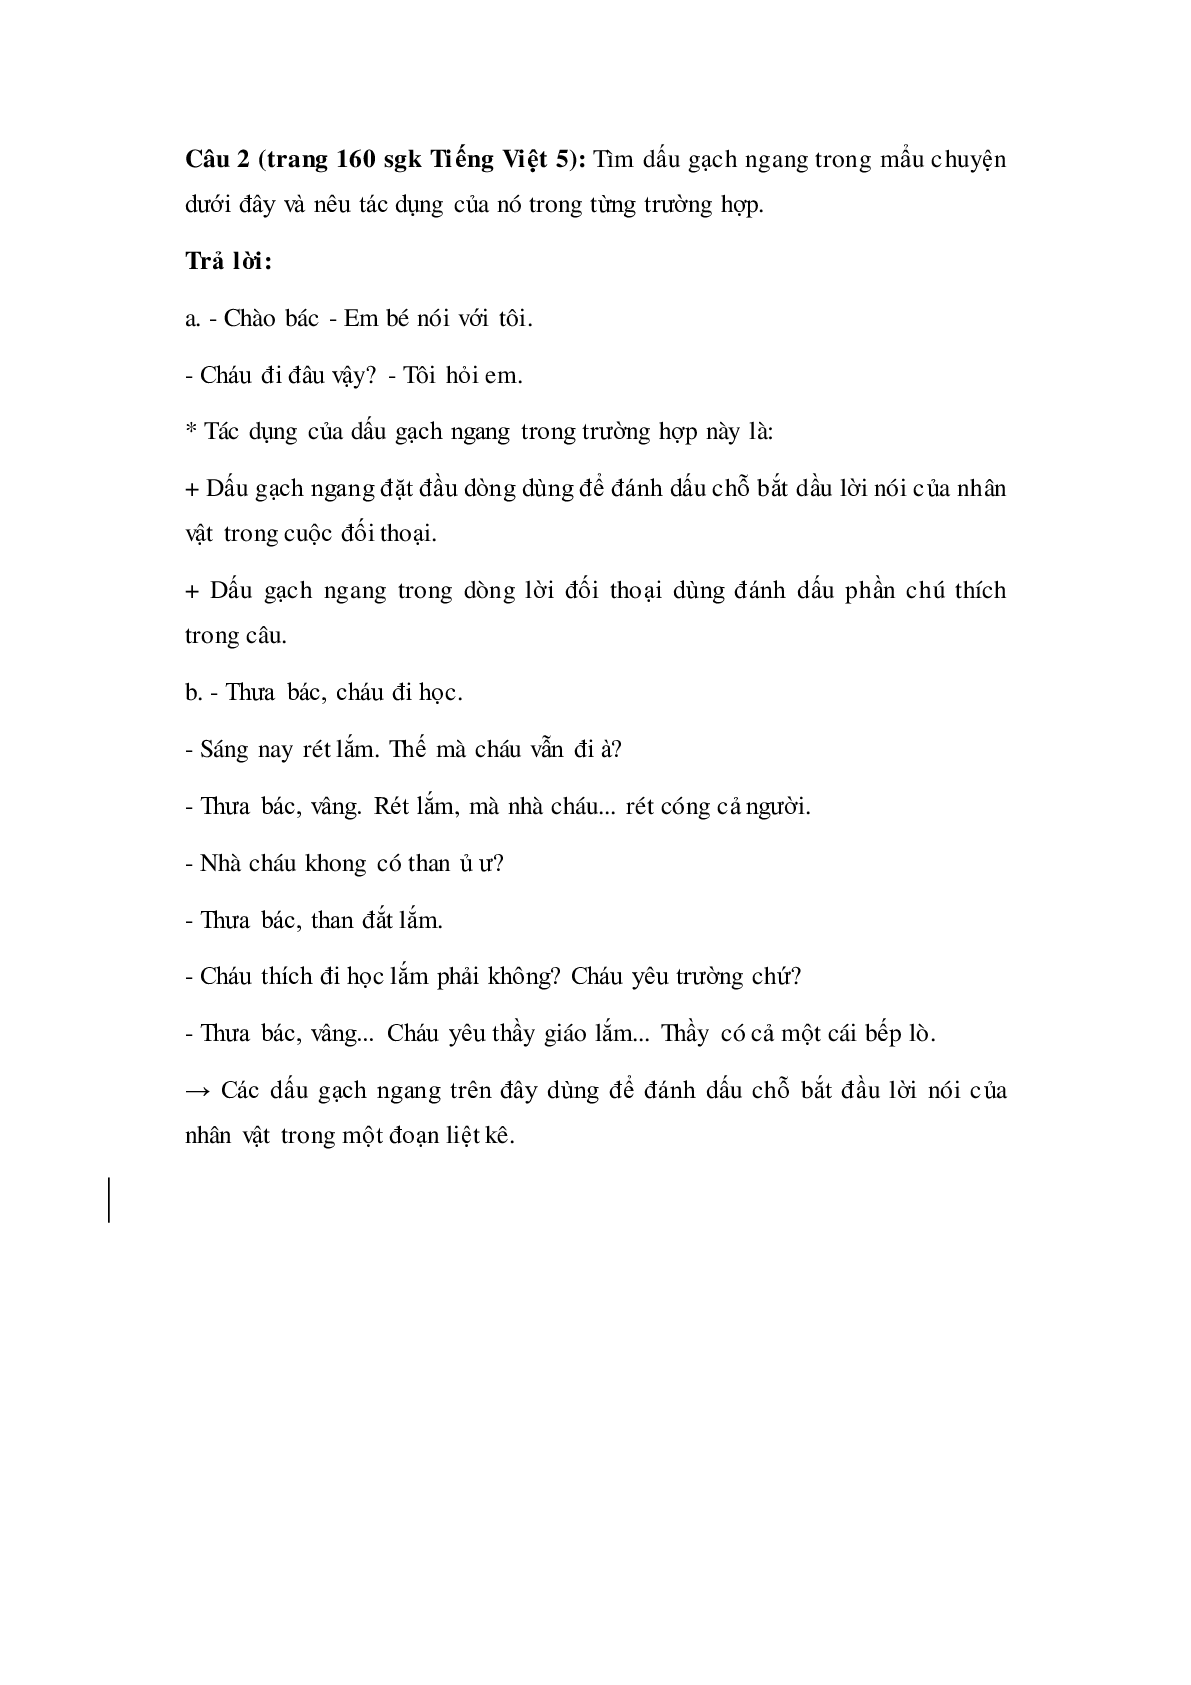 Soạn Tiếng Việt lớp 5: Luyện từ và câu: Ôn tập về dấu câu (Dấu gạch ngang) mới nhất (trang 2)